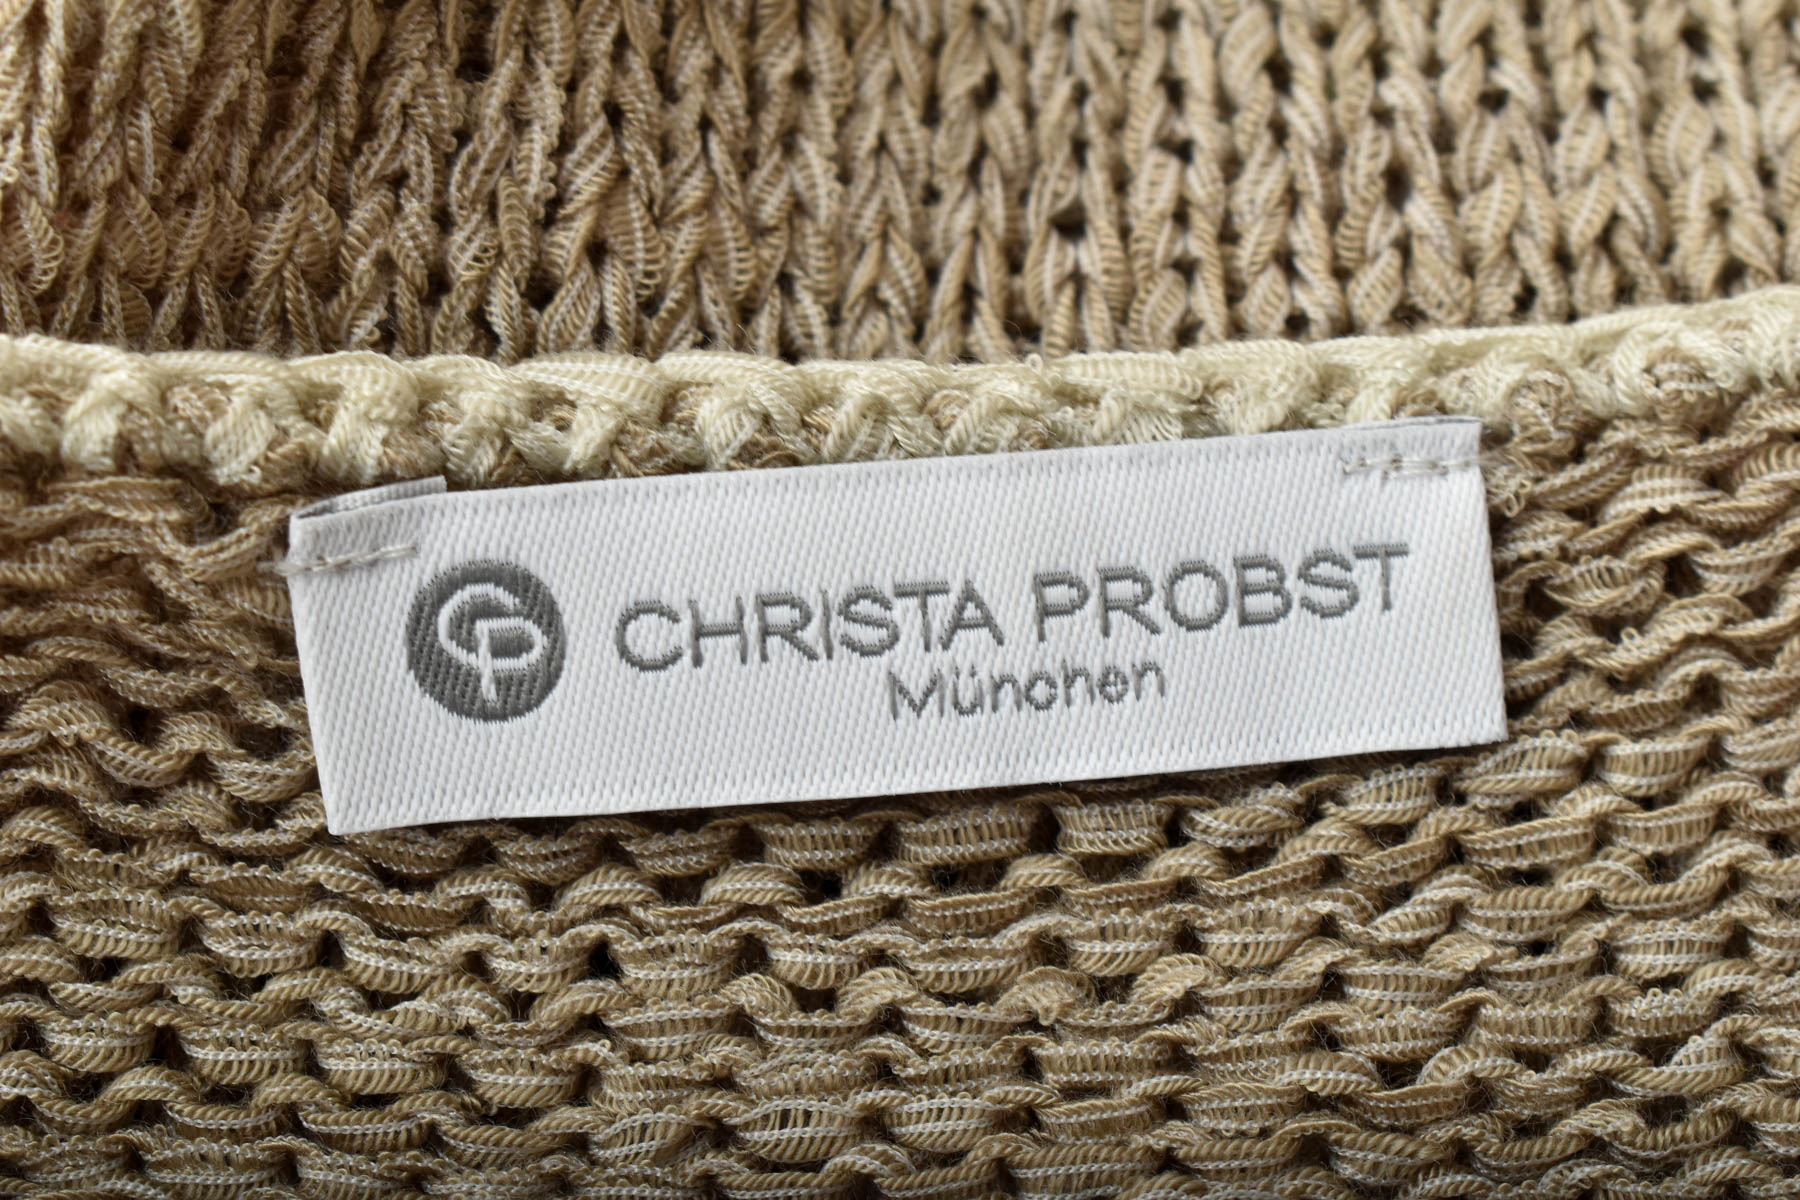 Pulover de damă - Christa Probst - 2